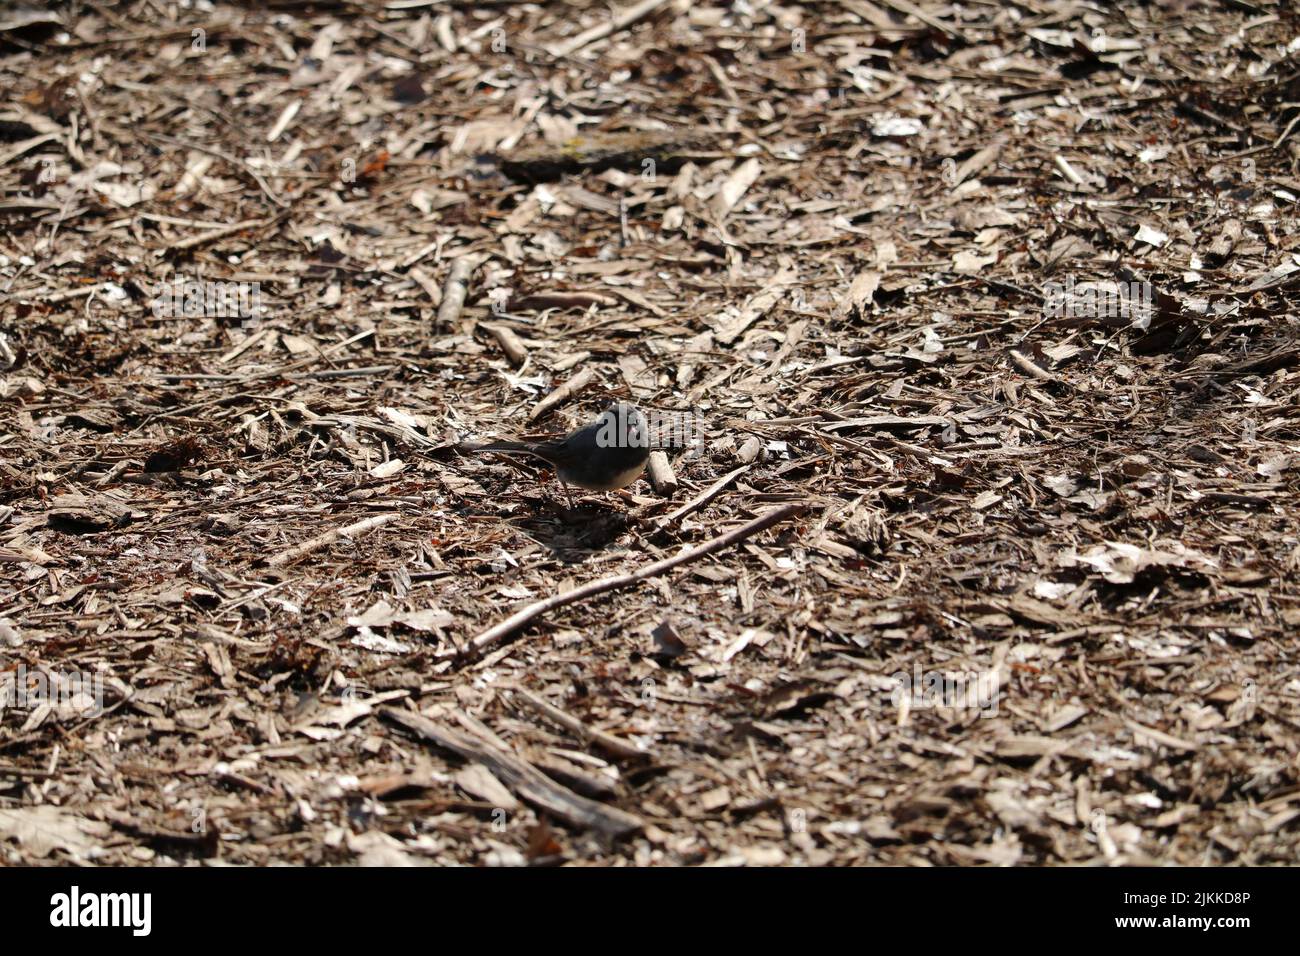 Ein kleiner Singvögel, der im Herbst auf dem Boden sitzt und mit braunem Laub gefüllt ist Stockfoto